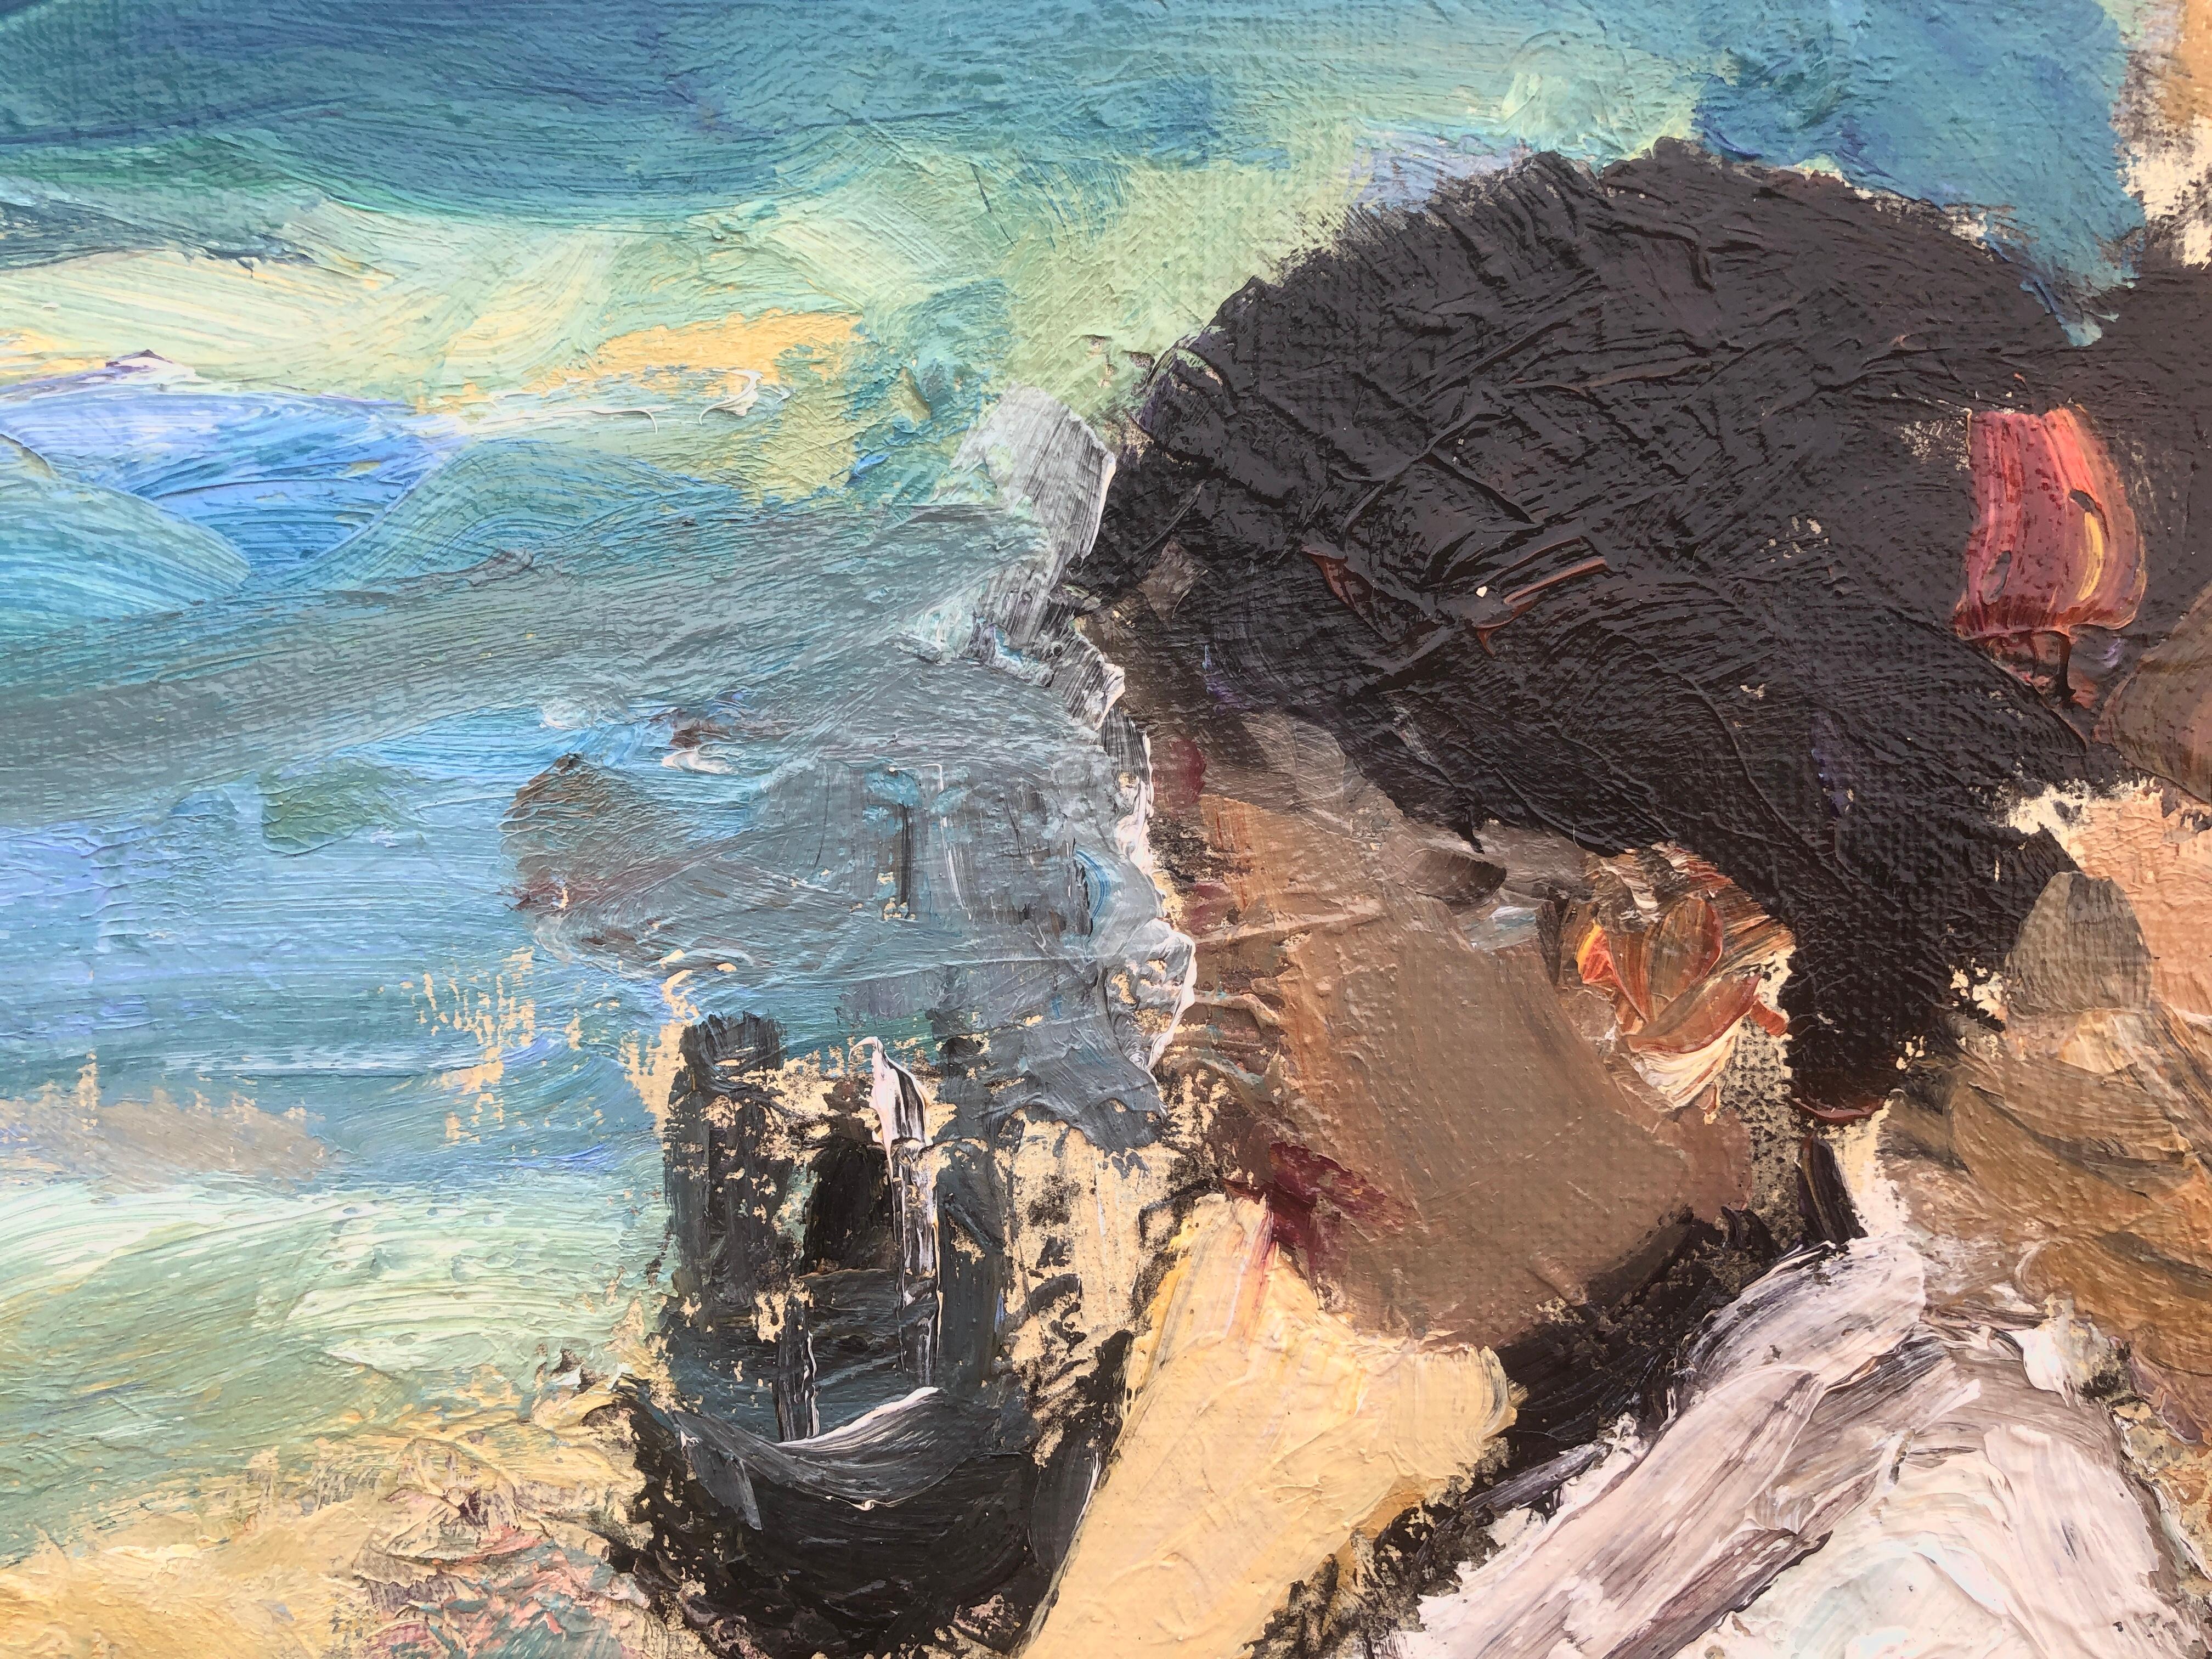 Woman on the beach - Espagne - Peinture à l'huile sur toile - Paysage marin impressionniste écossais - Gris Portrait Painting par Joan Vives Maristany